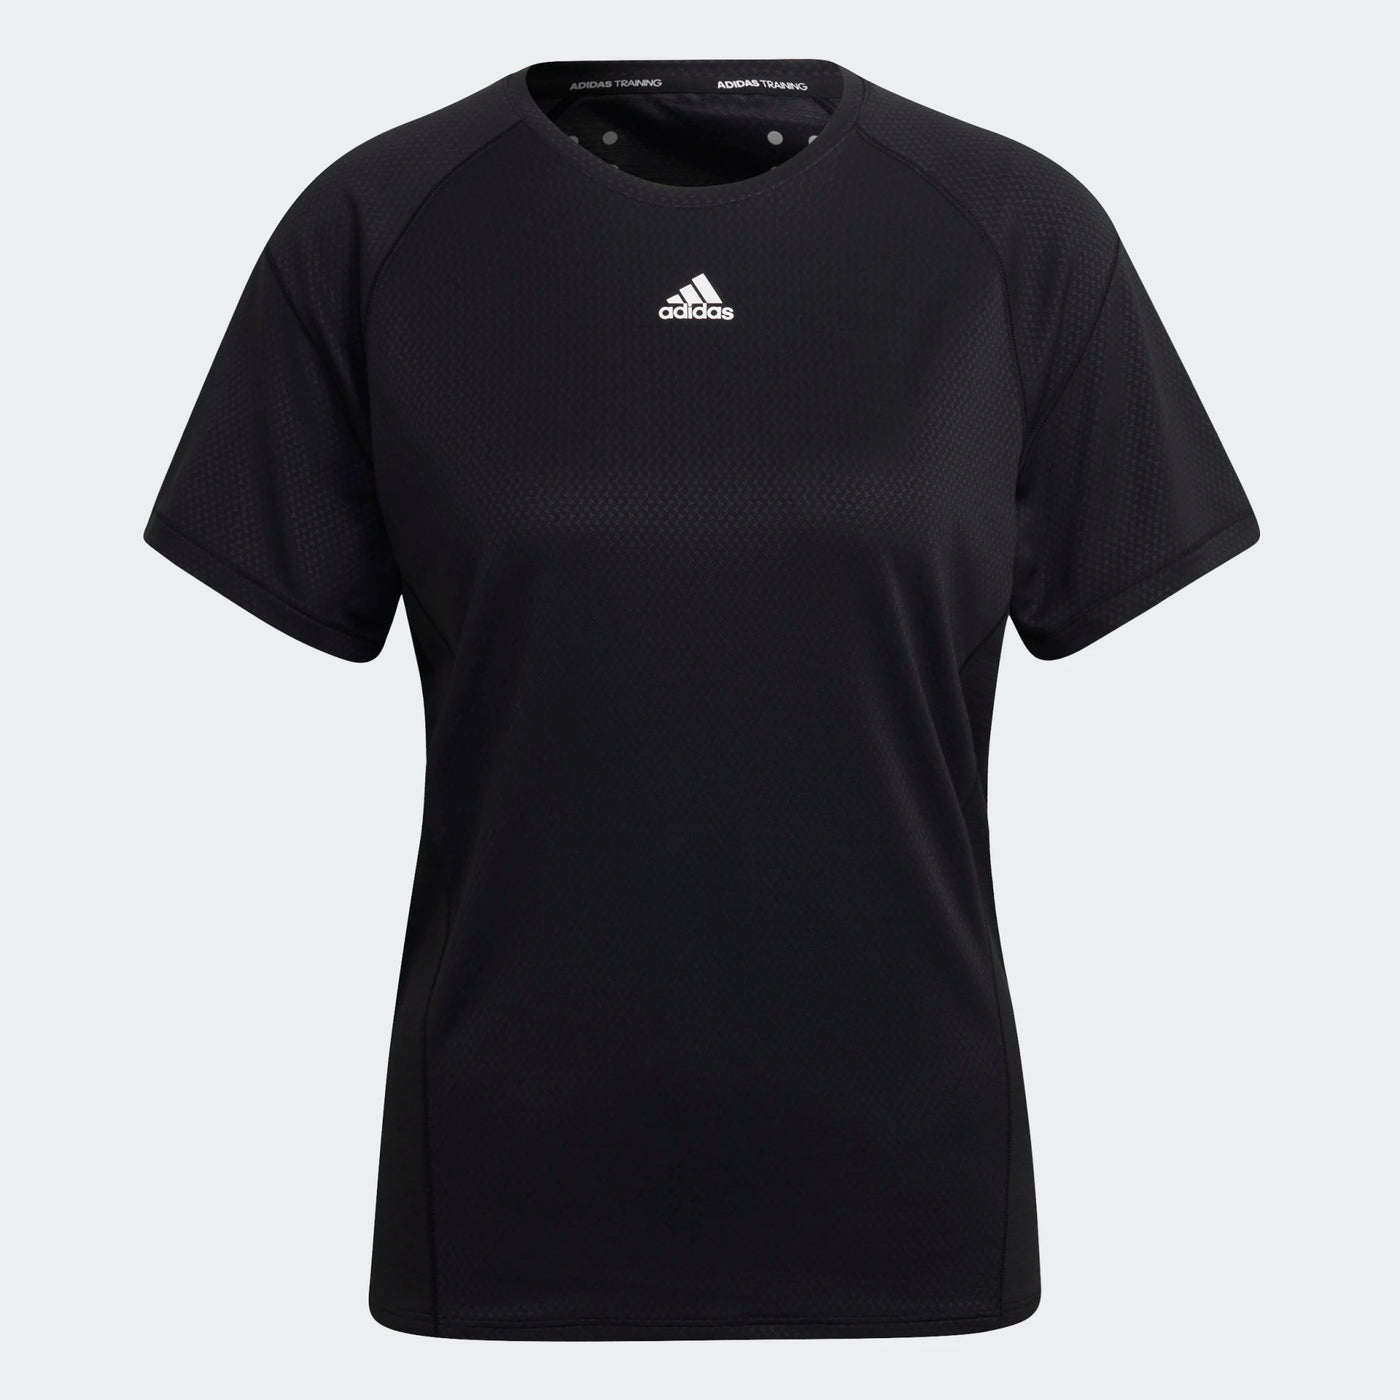 Adidas Women's Aeroready Training Tshirt -Black